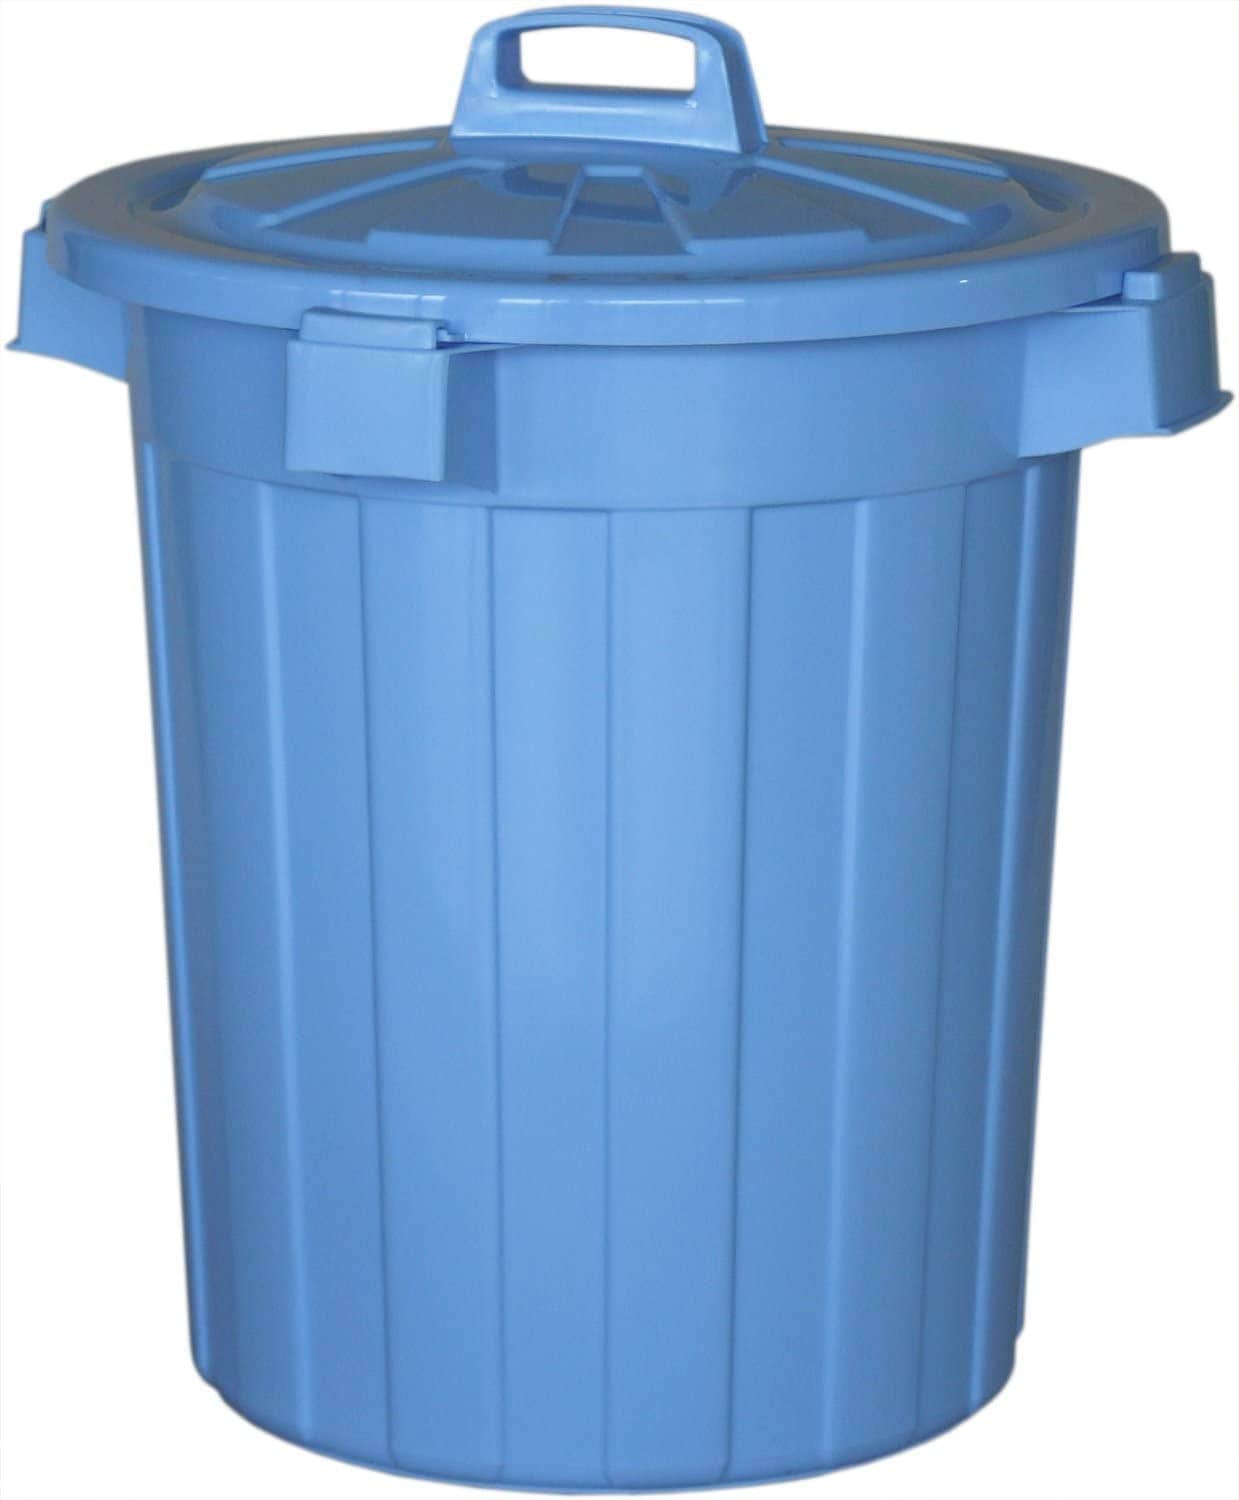 平和工業 ゴミ箱 ピジョンペール 90L 屋外用 ブルー